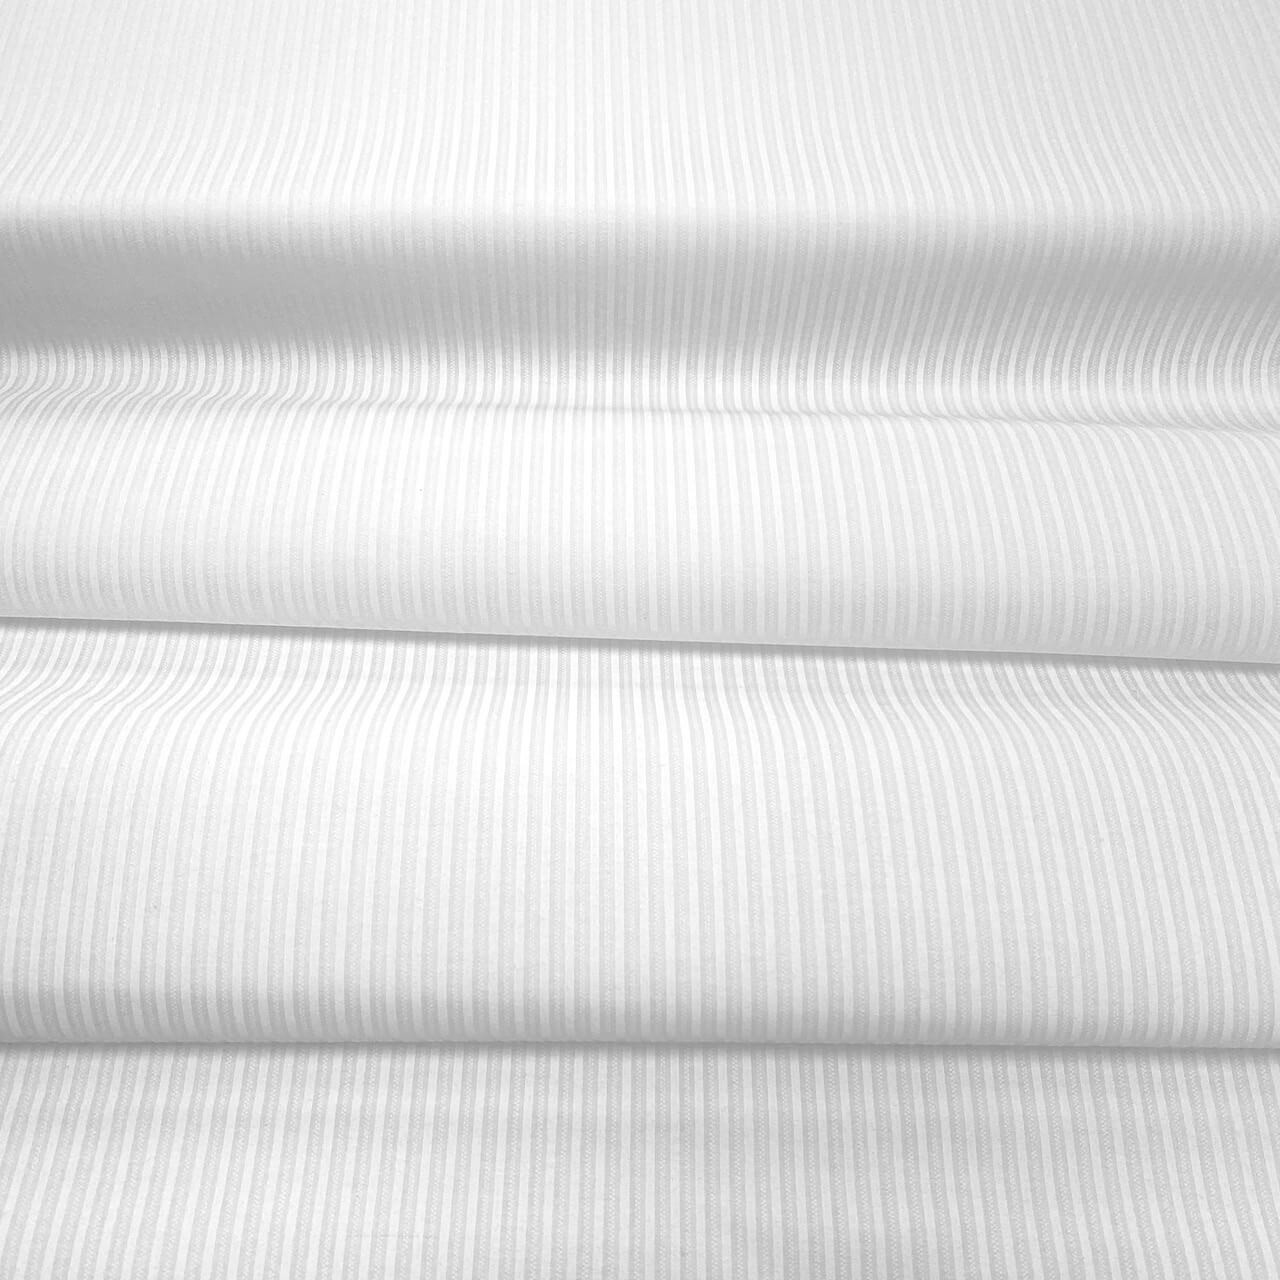 Textured Stripe white-on-white fabric